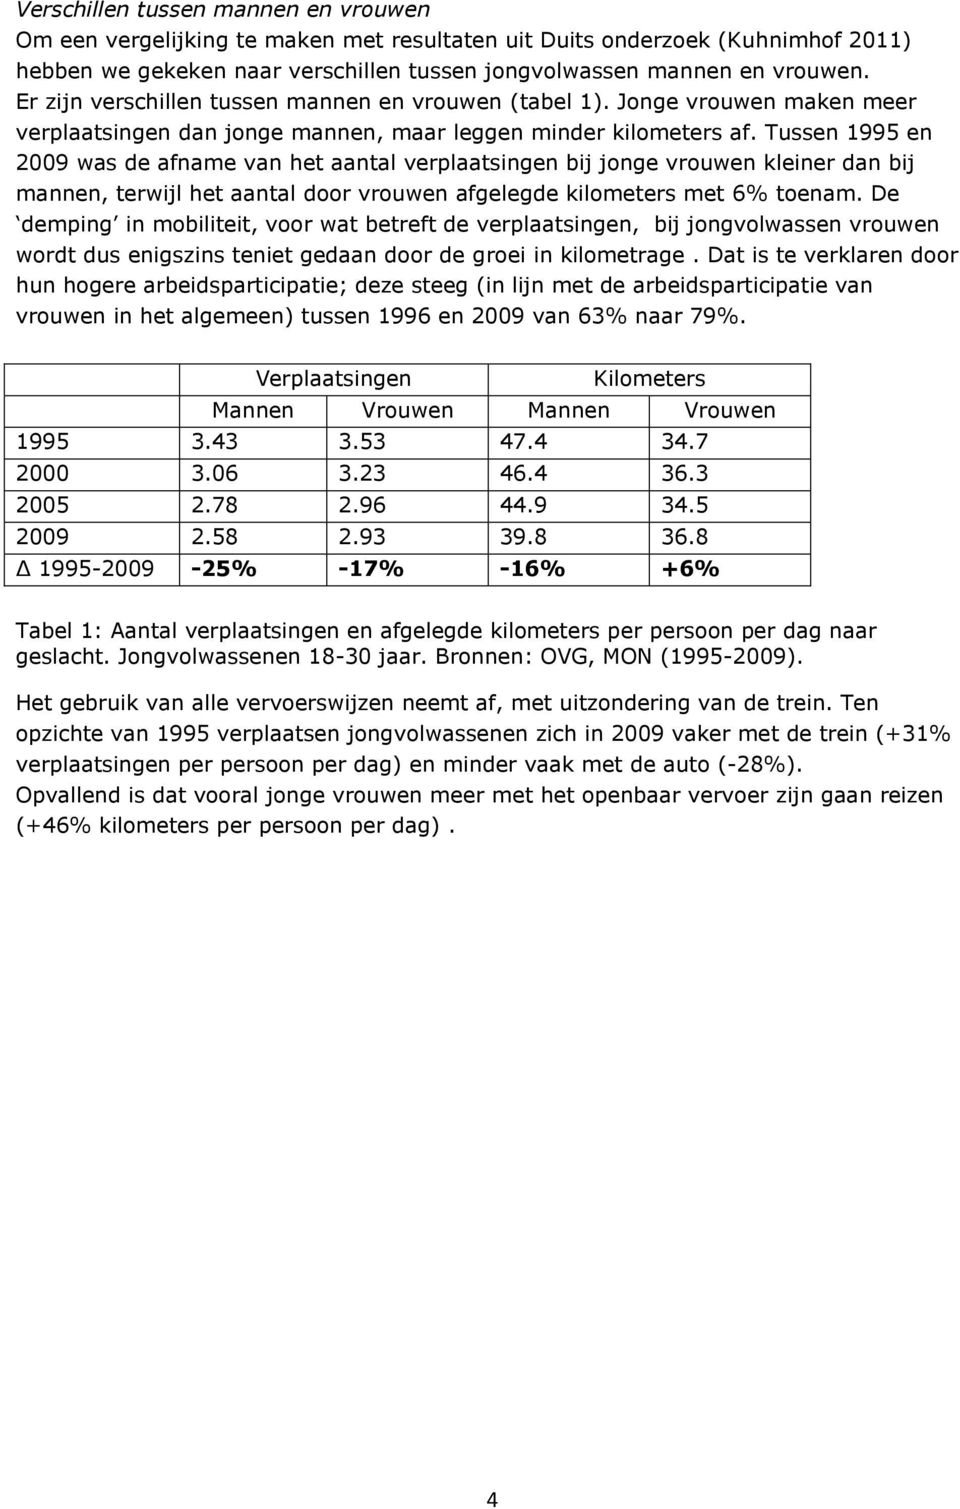 Tussen 1995 en 2009 was de afname van het aantal verplaatsingen bij jonge vrouwen kleiner dan bij mannen, terwijl het aantal door vrouwen afgelegde kilometers met 6% toenam.